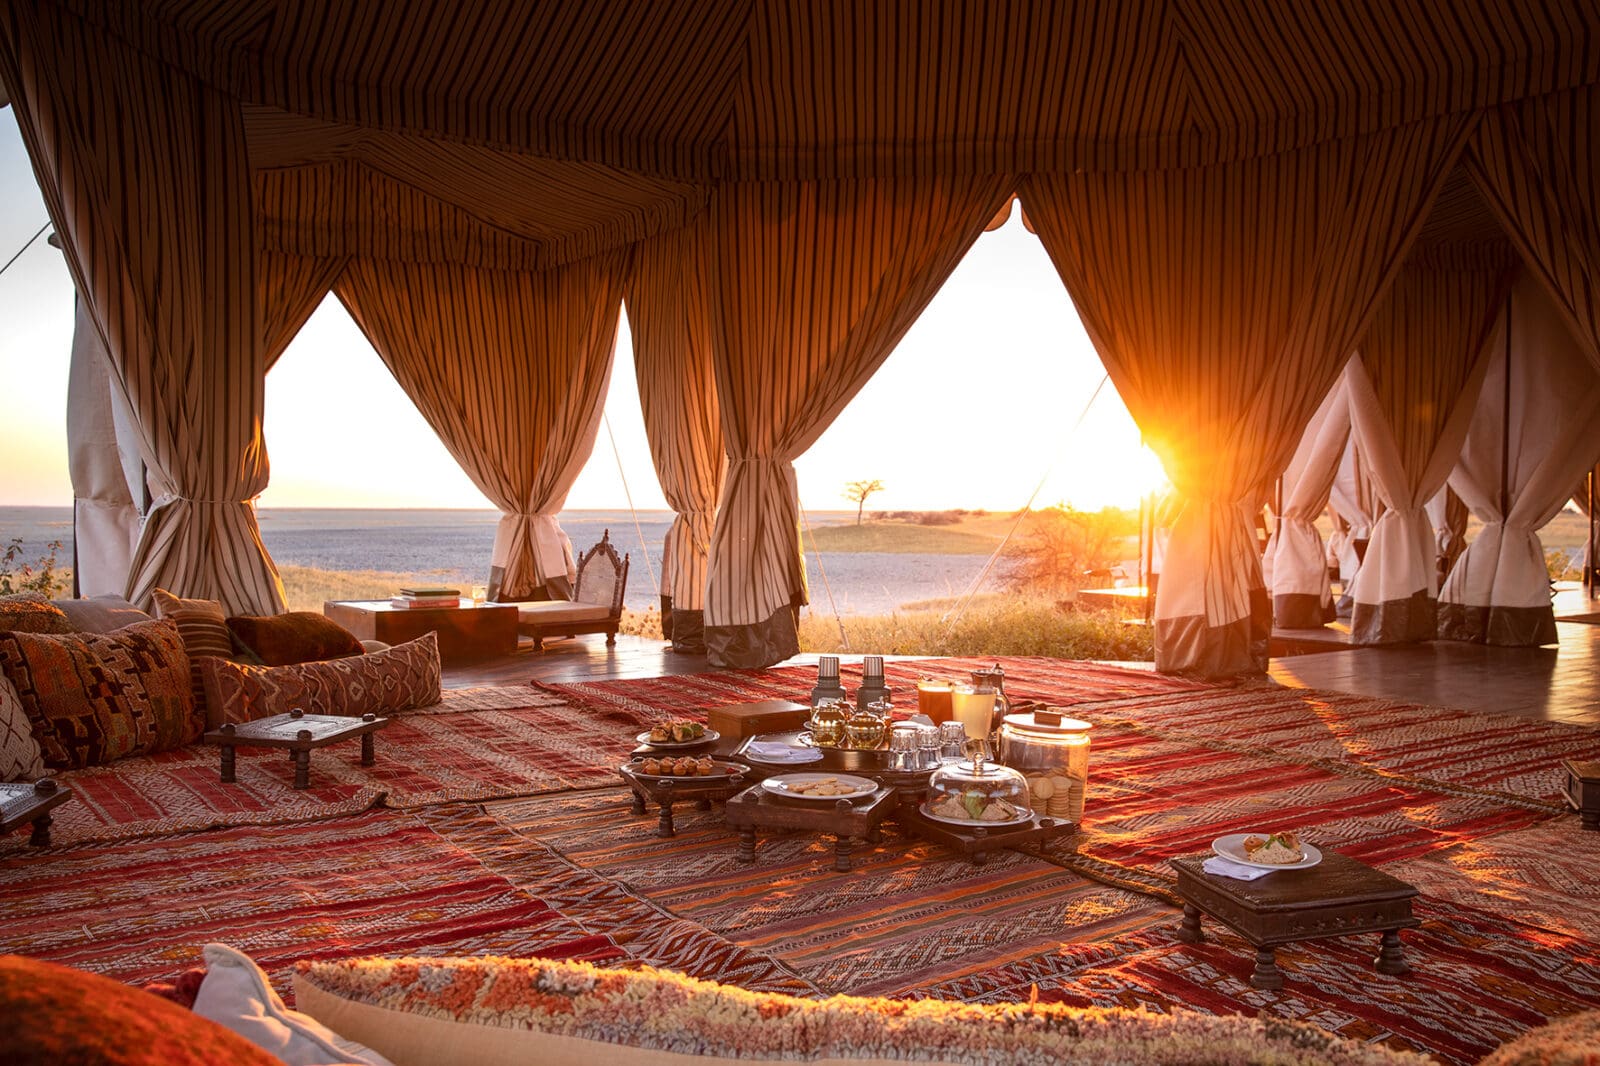 luxurious tea tent at san camp overlooking salt pans at sunset